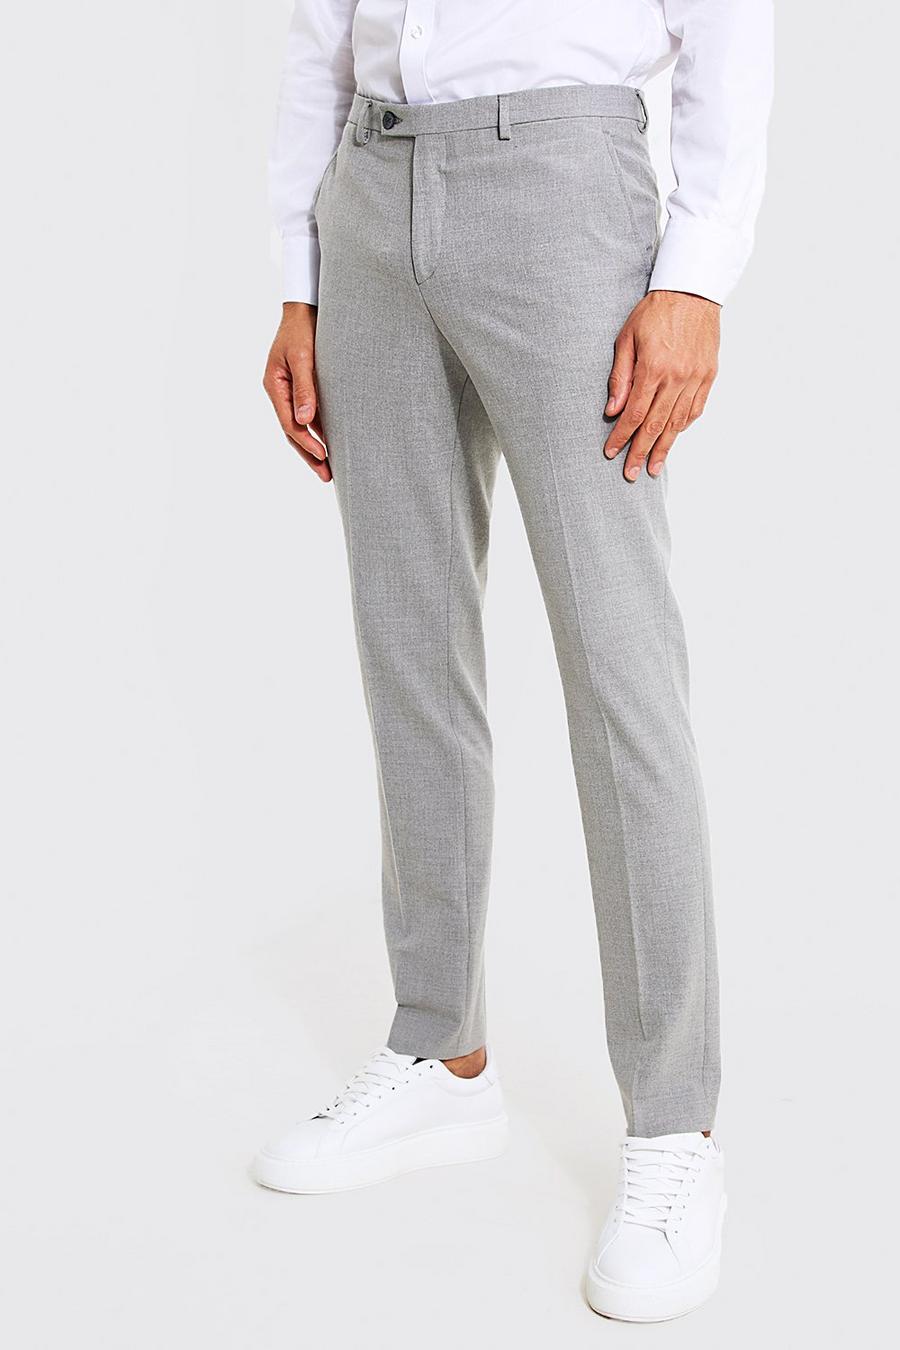 https://media.boohoo.com/i/boohoo/mzz10343_grey_xl/male-grey-skinny-grey-suit-pants/?w=900&qlt=default&fmt.jp2.qlt=70&fmt=auto&sm=fit